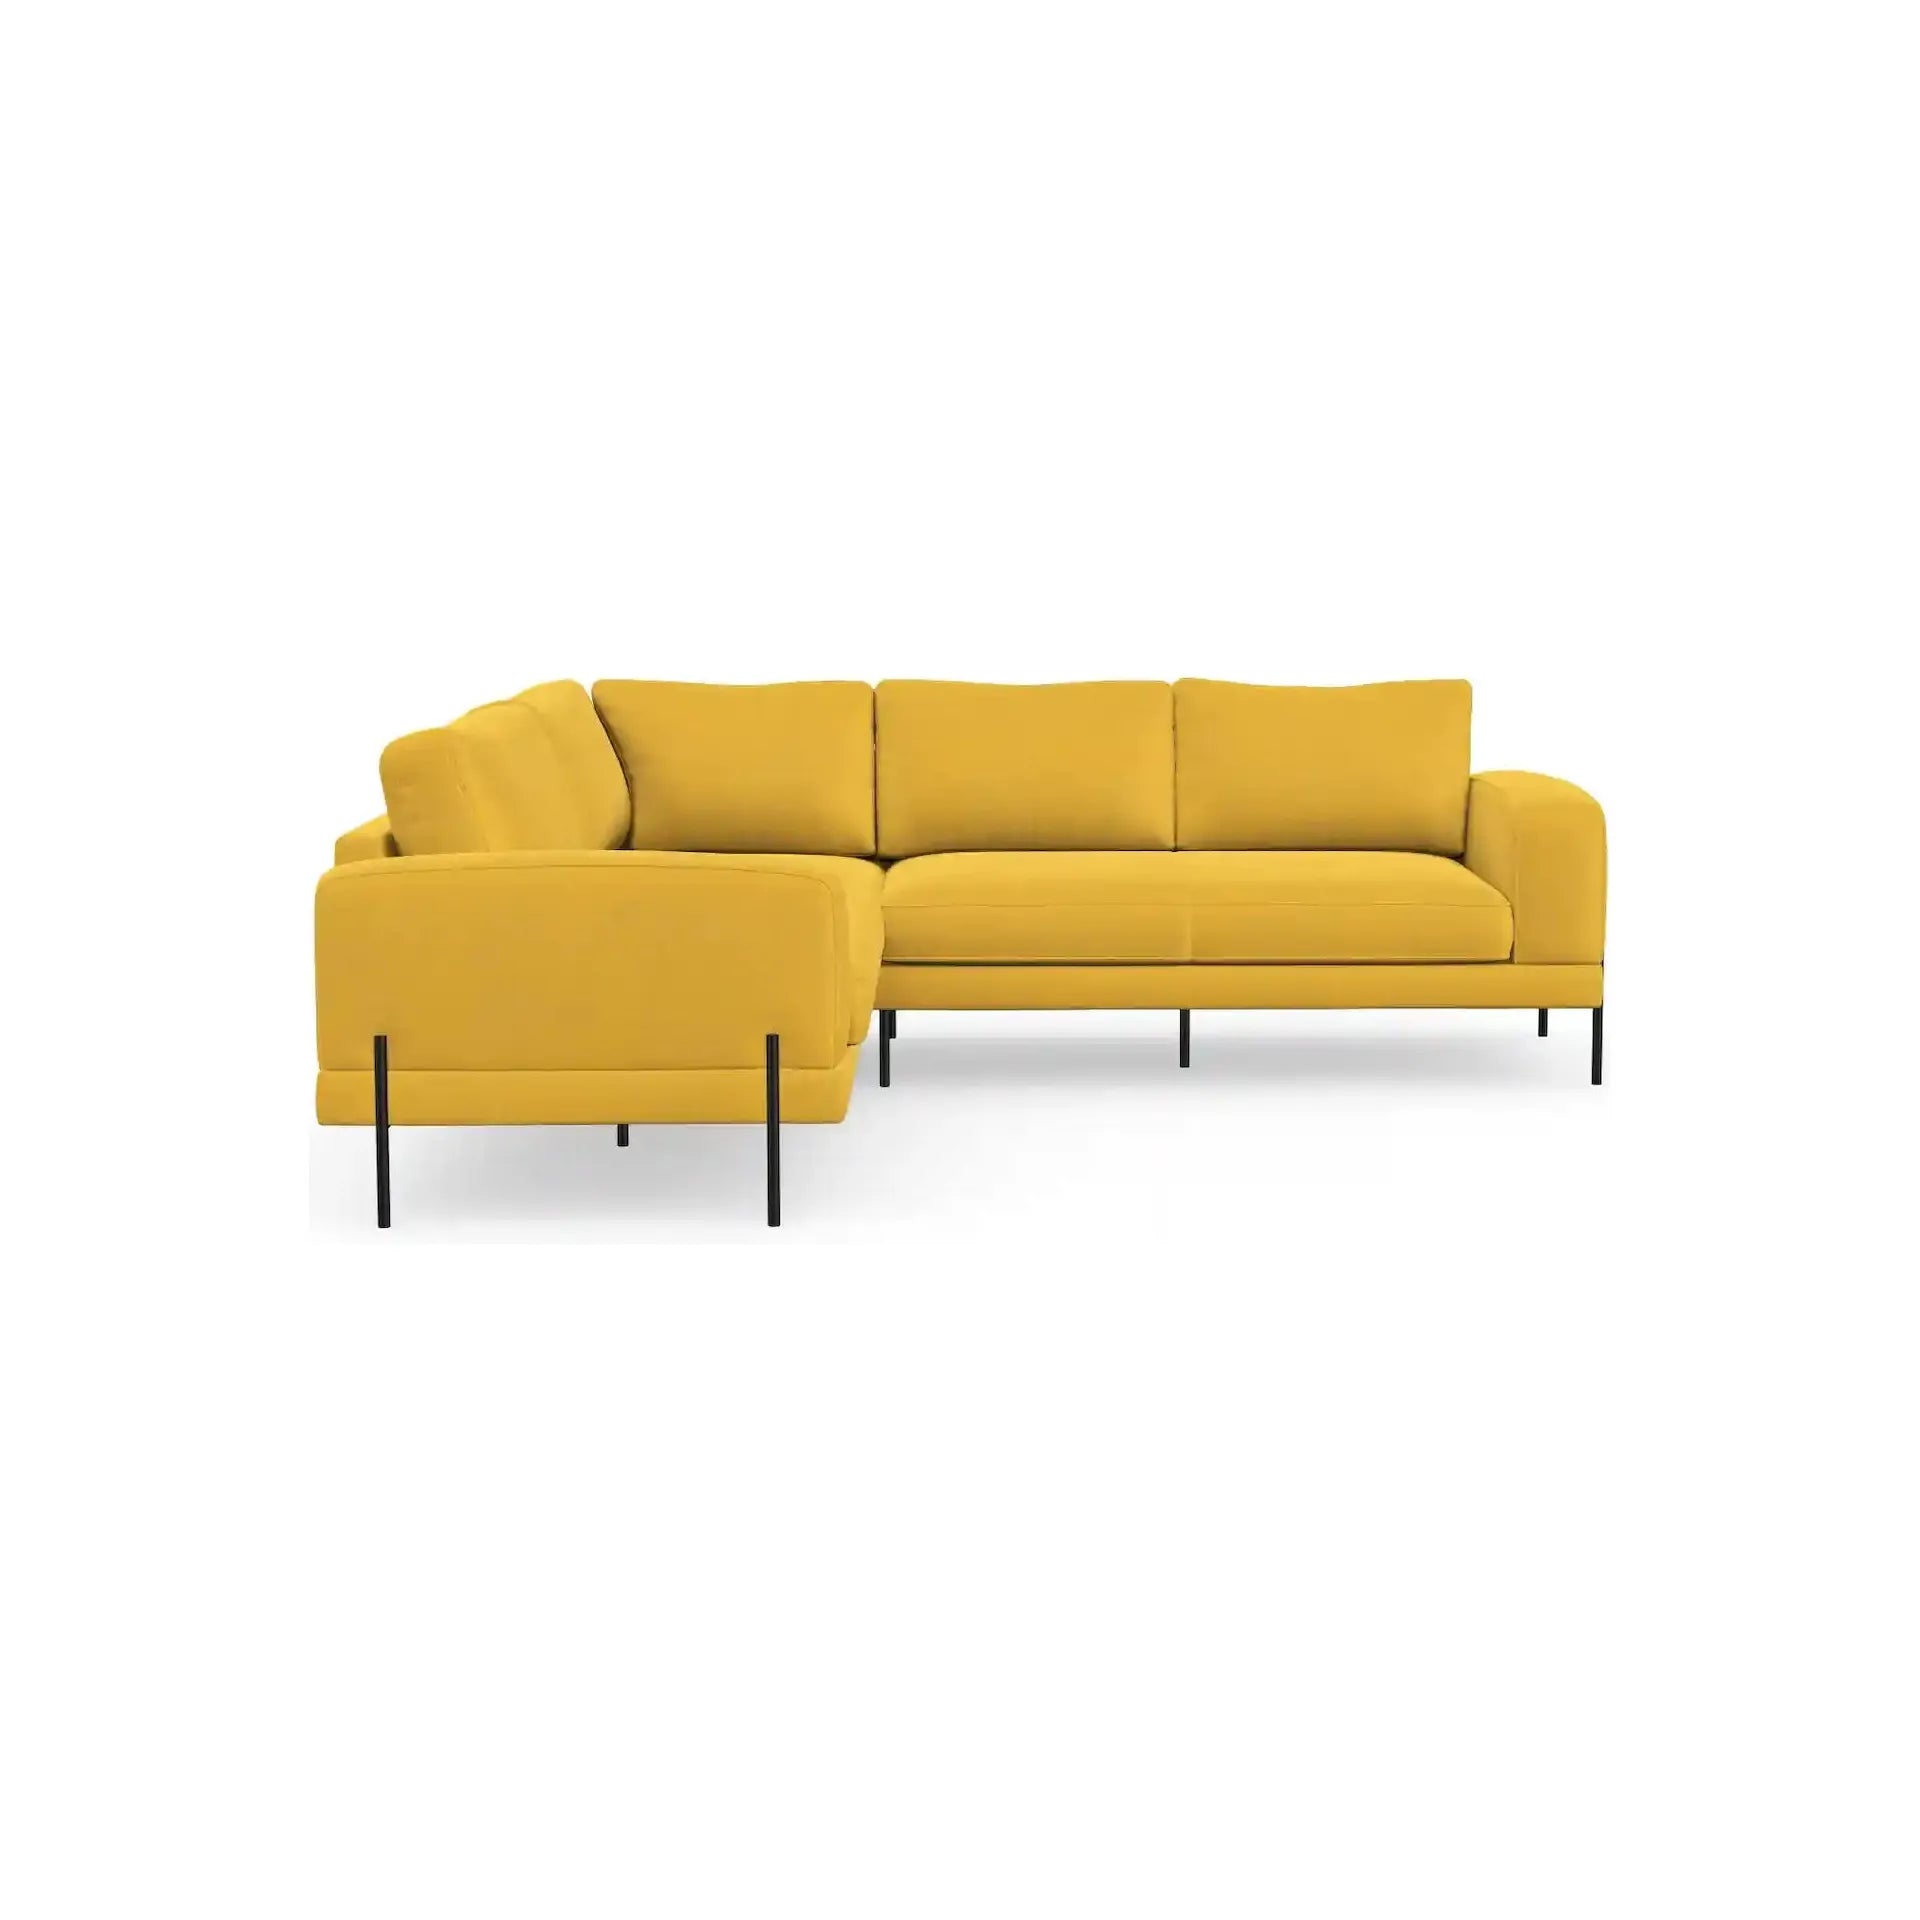 KARIN kampinė sofa, natūrali spalva, dešinė pusė